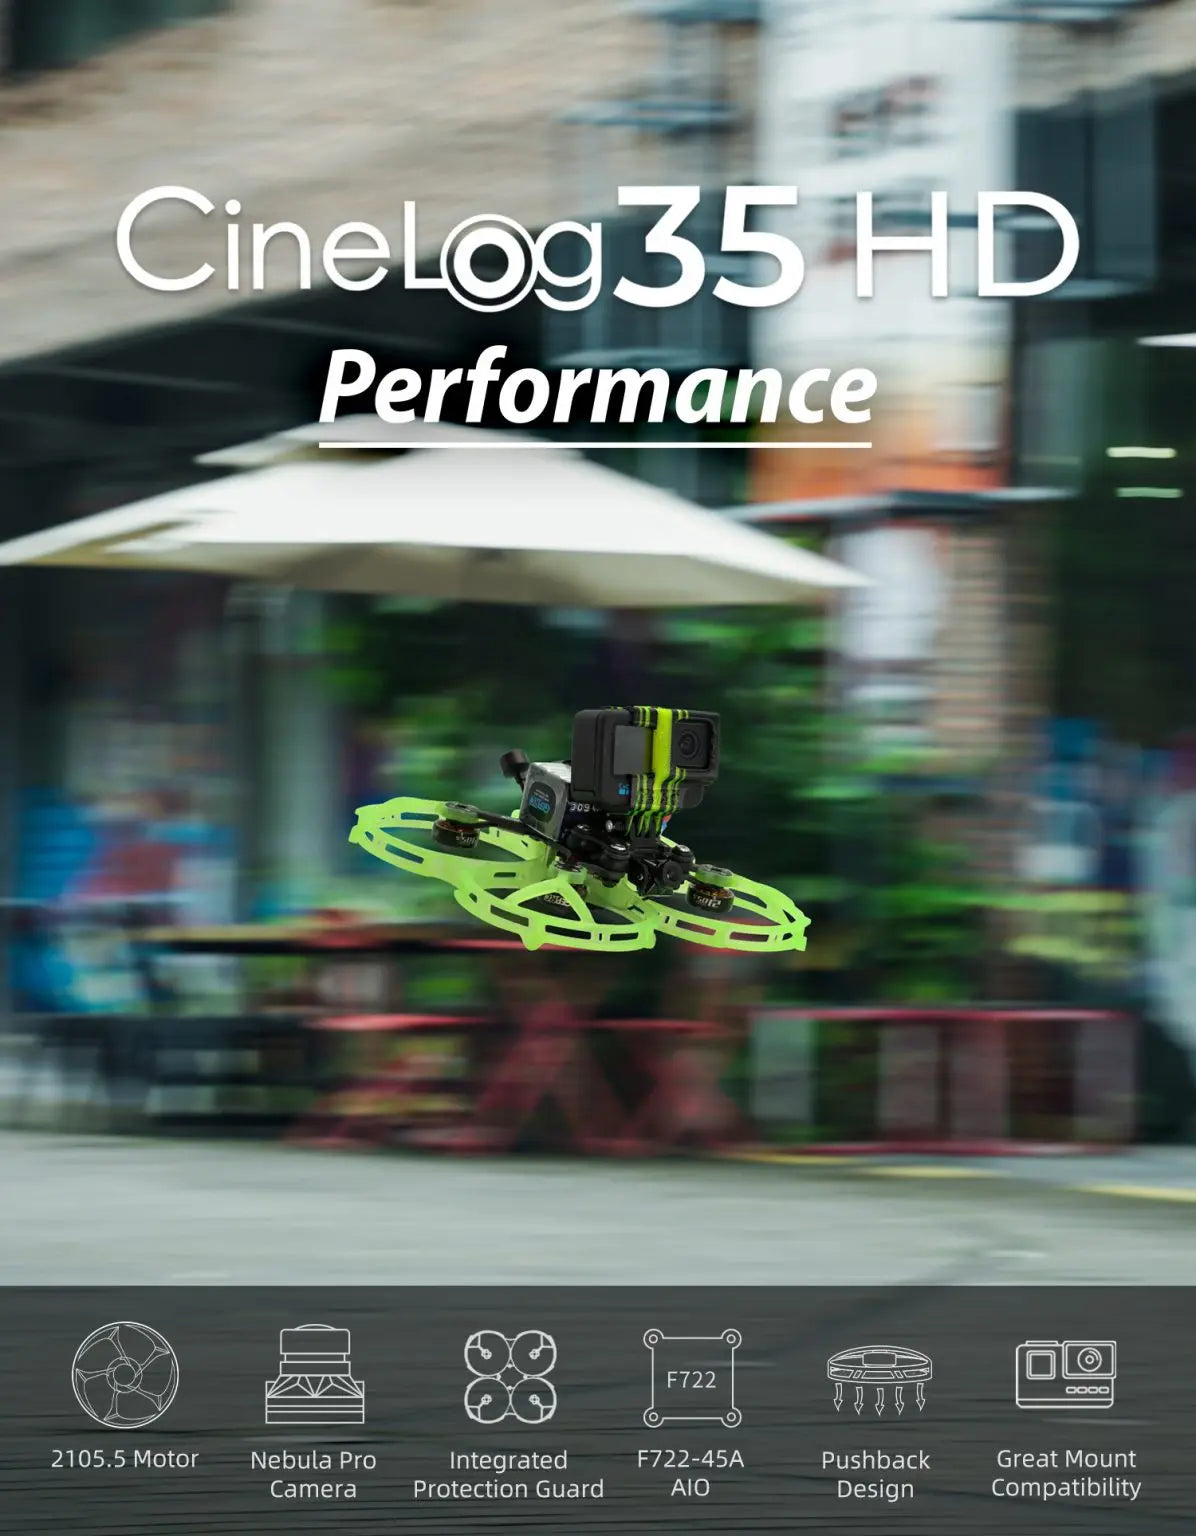 GEPRC CineLog35 Cinewhoop, Cinelog35 HD Performance Jc9 2 F722 CooO 2105.5 Motor